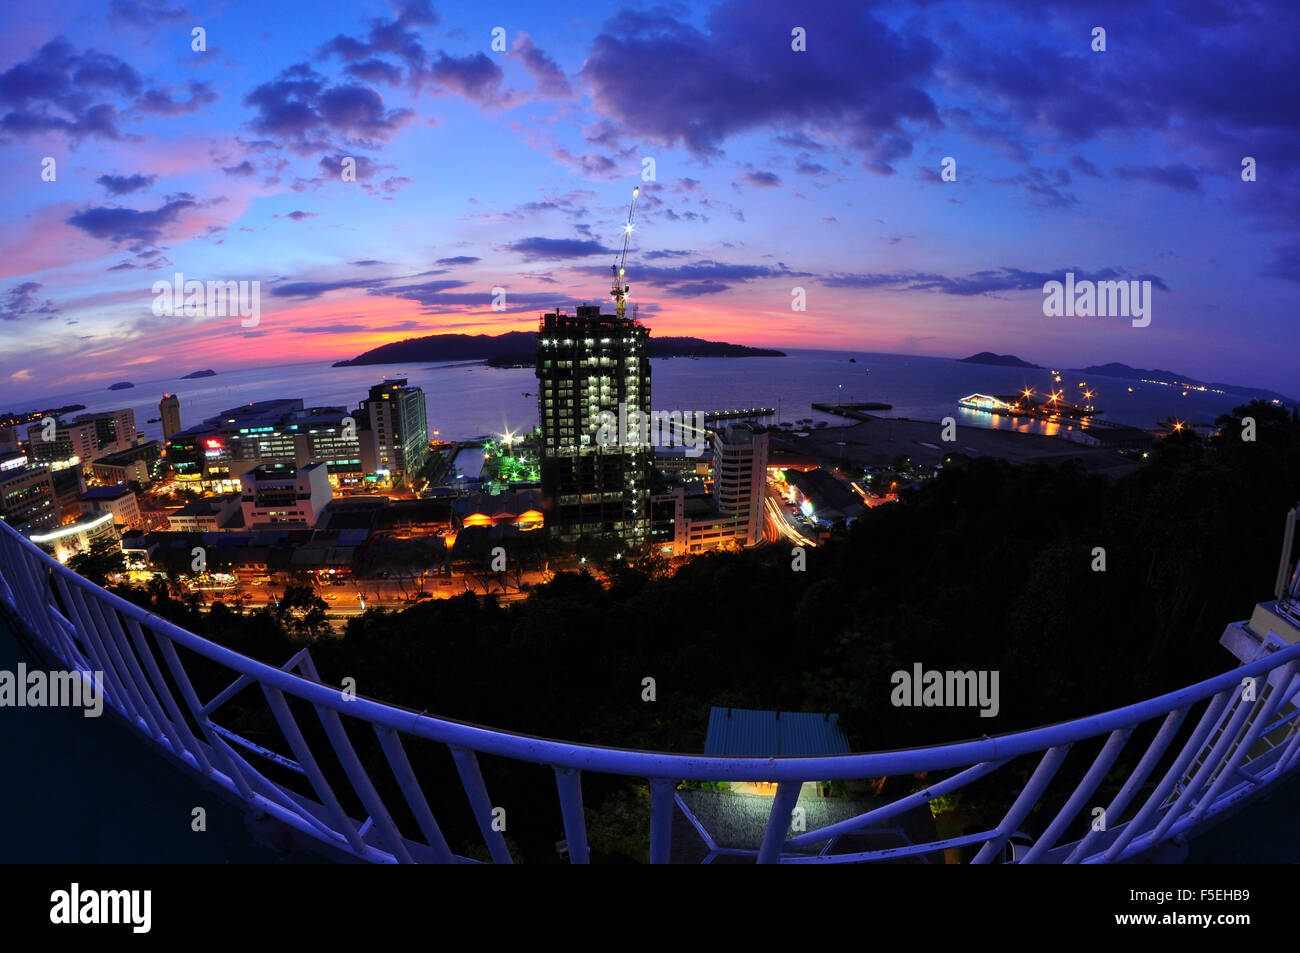 Sunset view of Kota kinabalu, Sabah, Malaysia Stock Photo